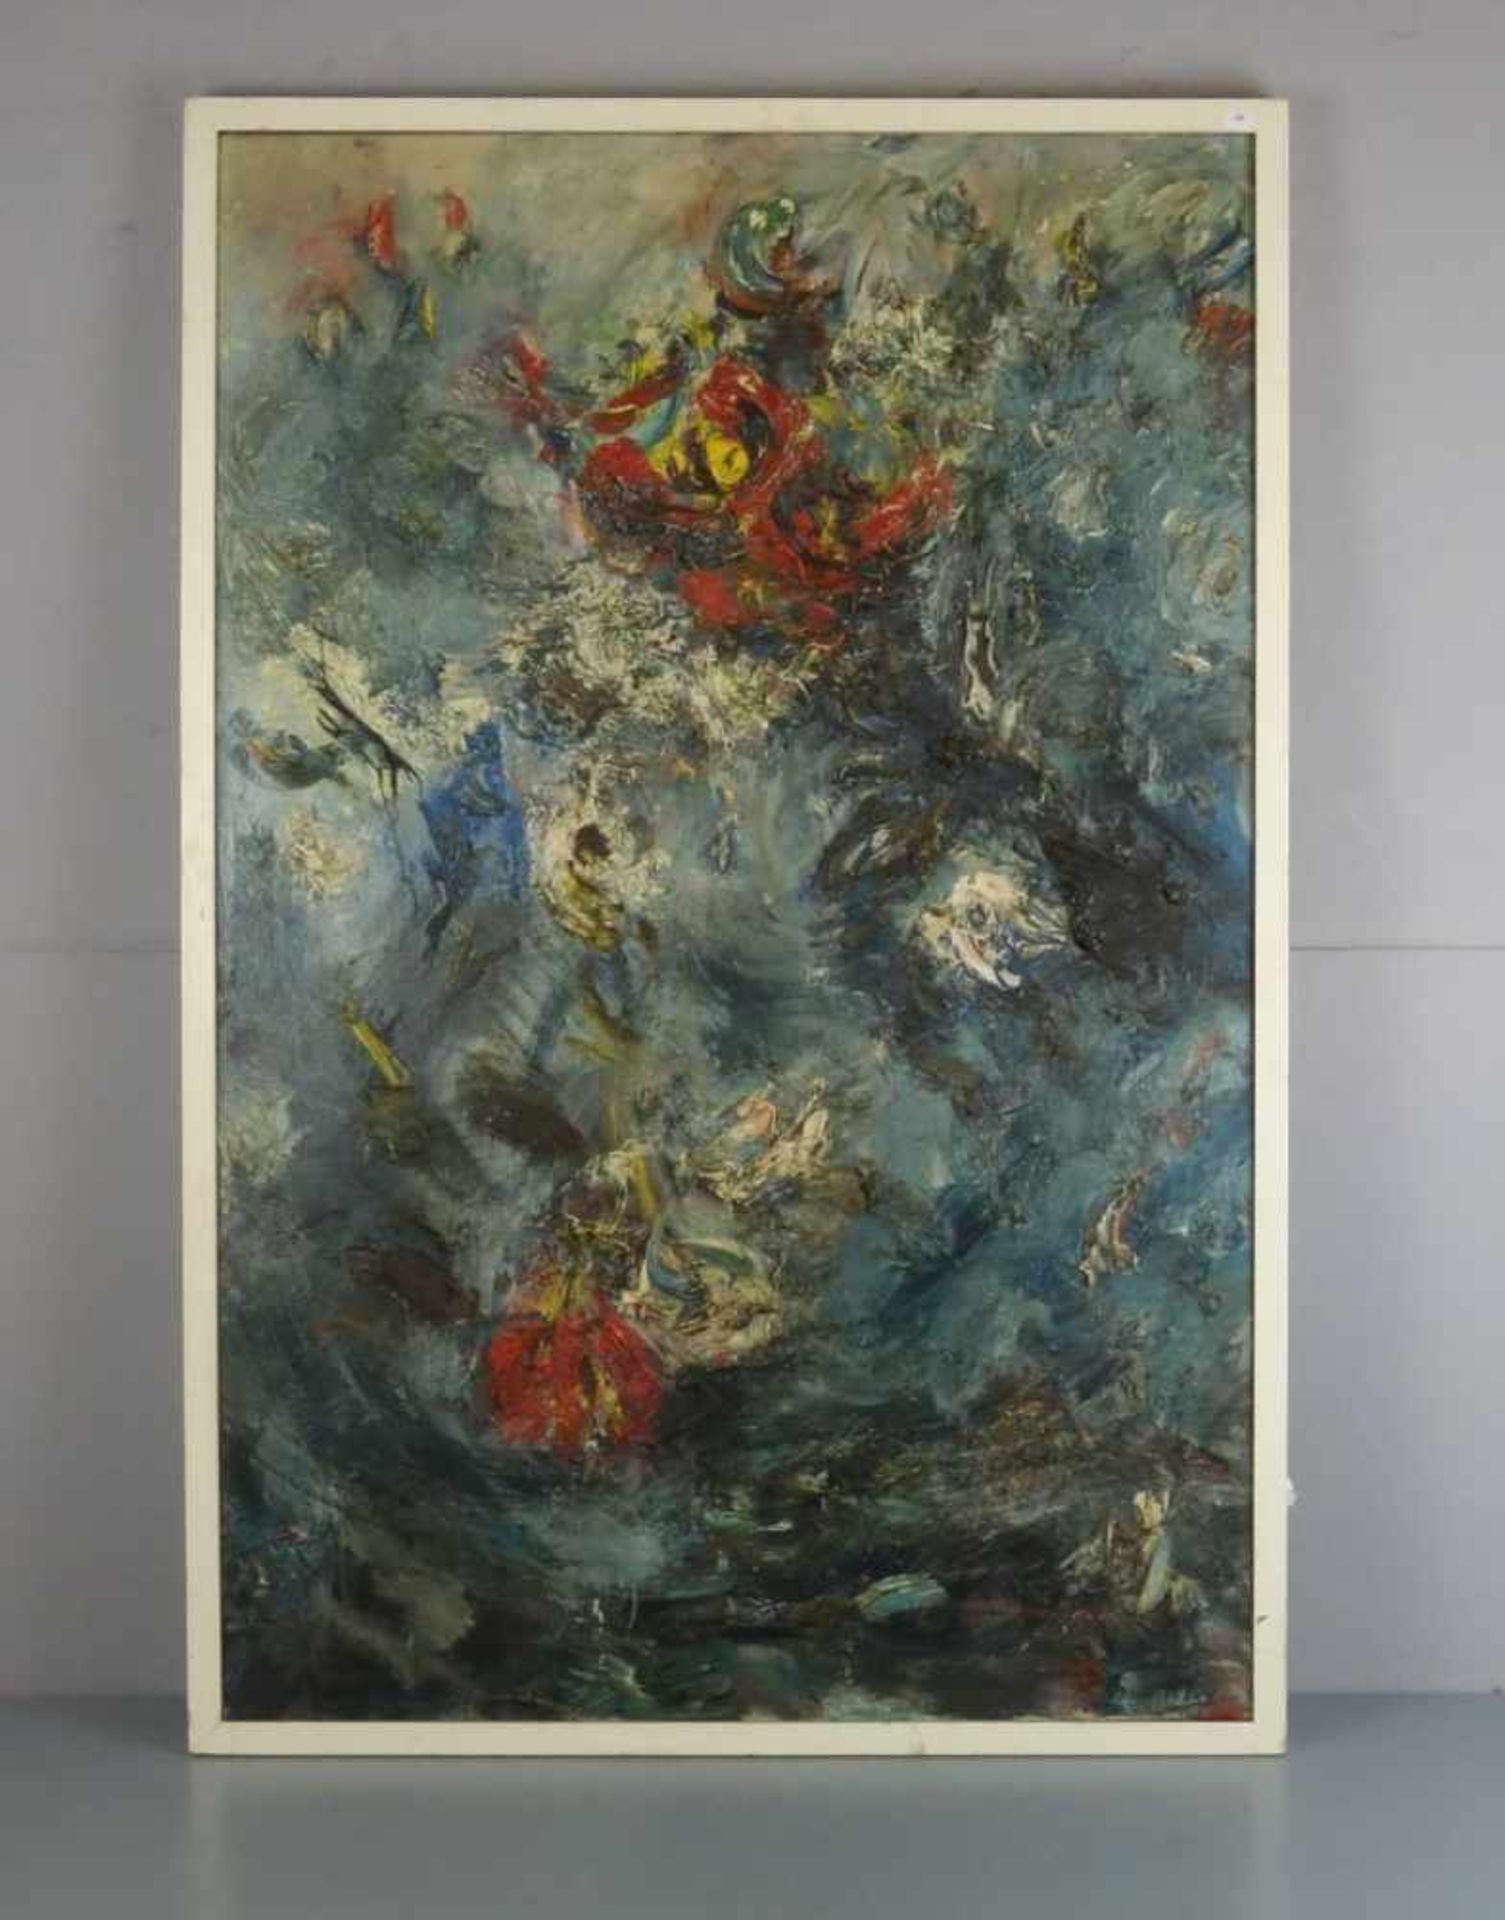 KLEY, HENRI (geb. 1908), Gemälde / painting: "Abstrahiertes Blumenstillleben", Öl auf Leinwand / oil